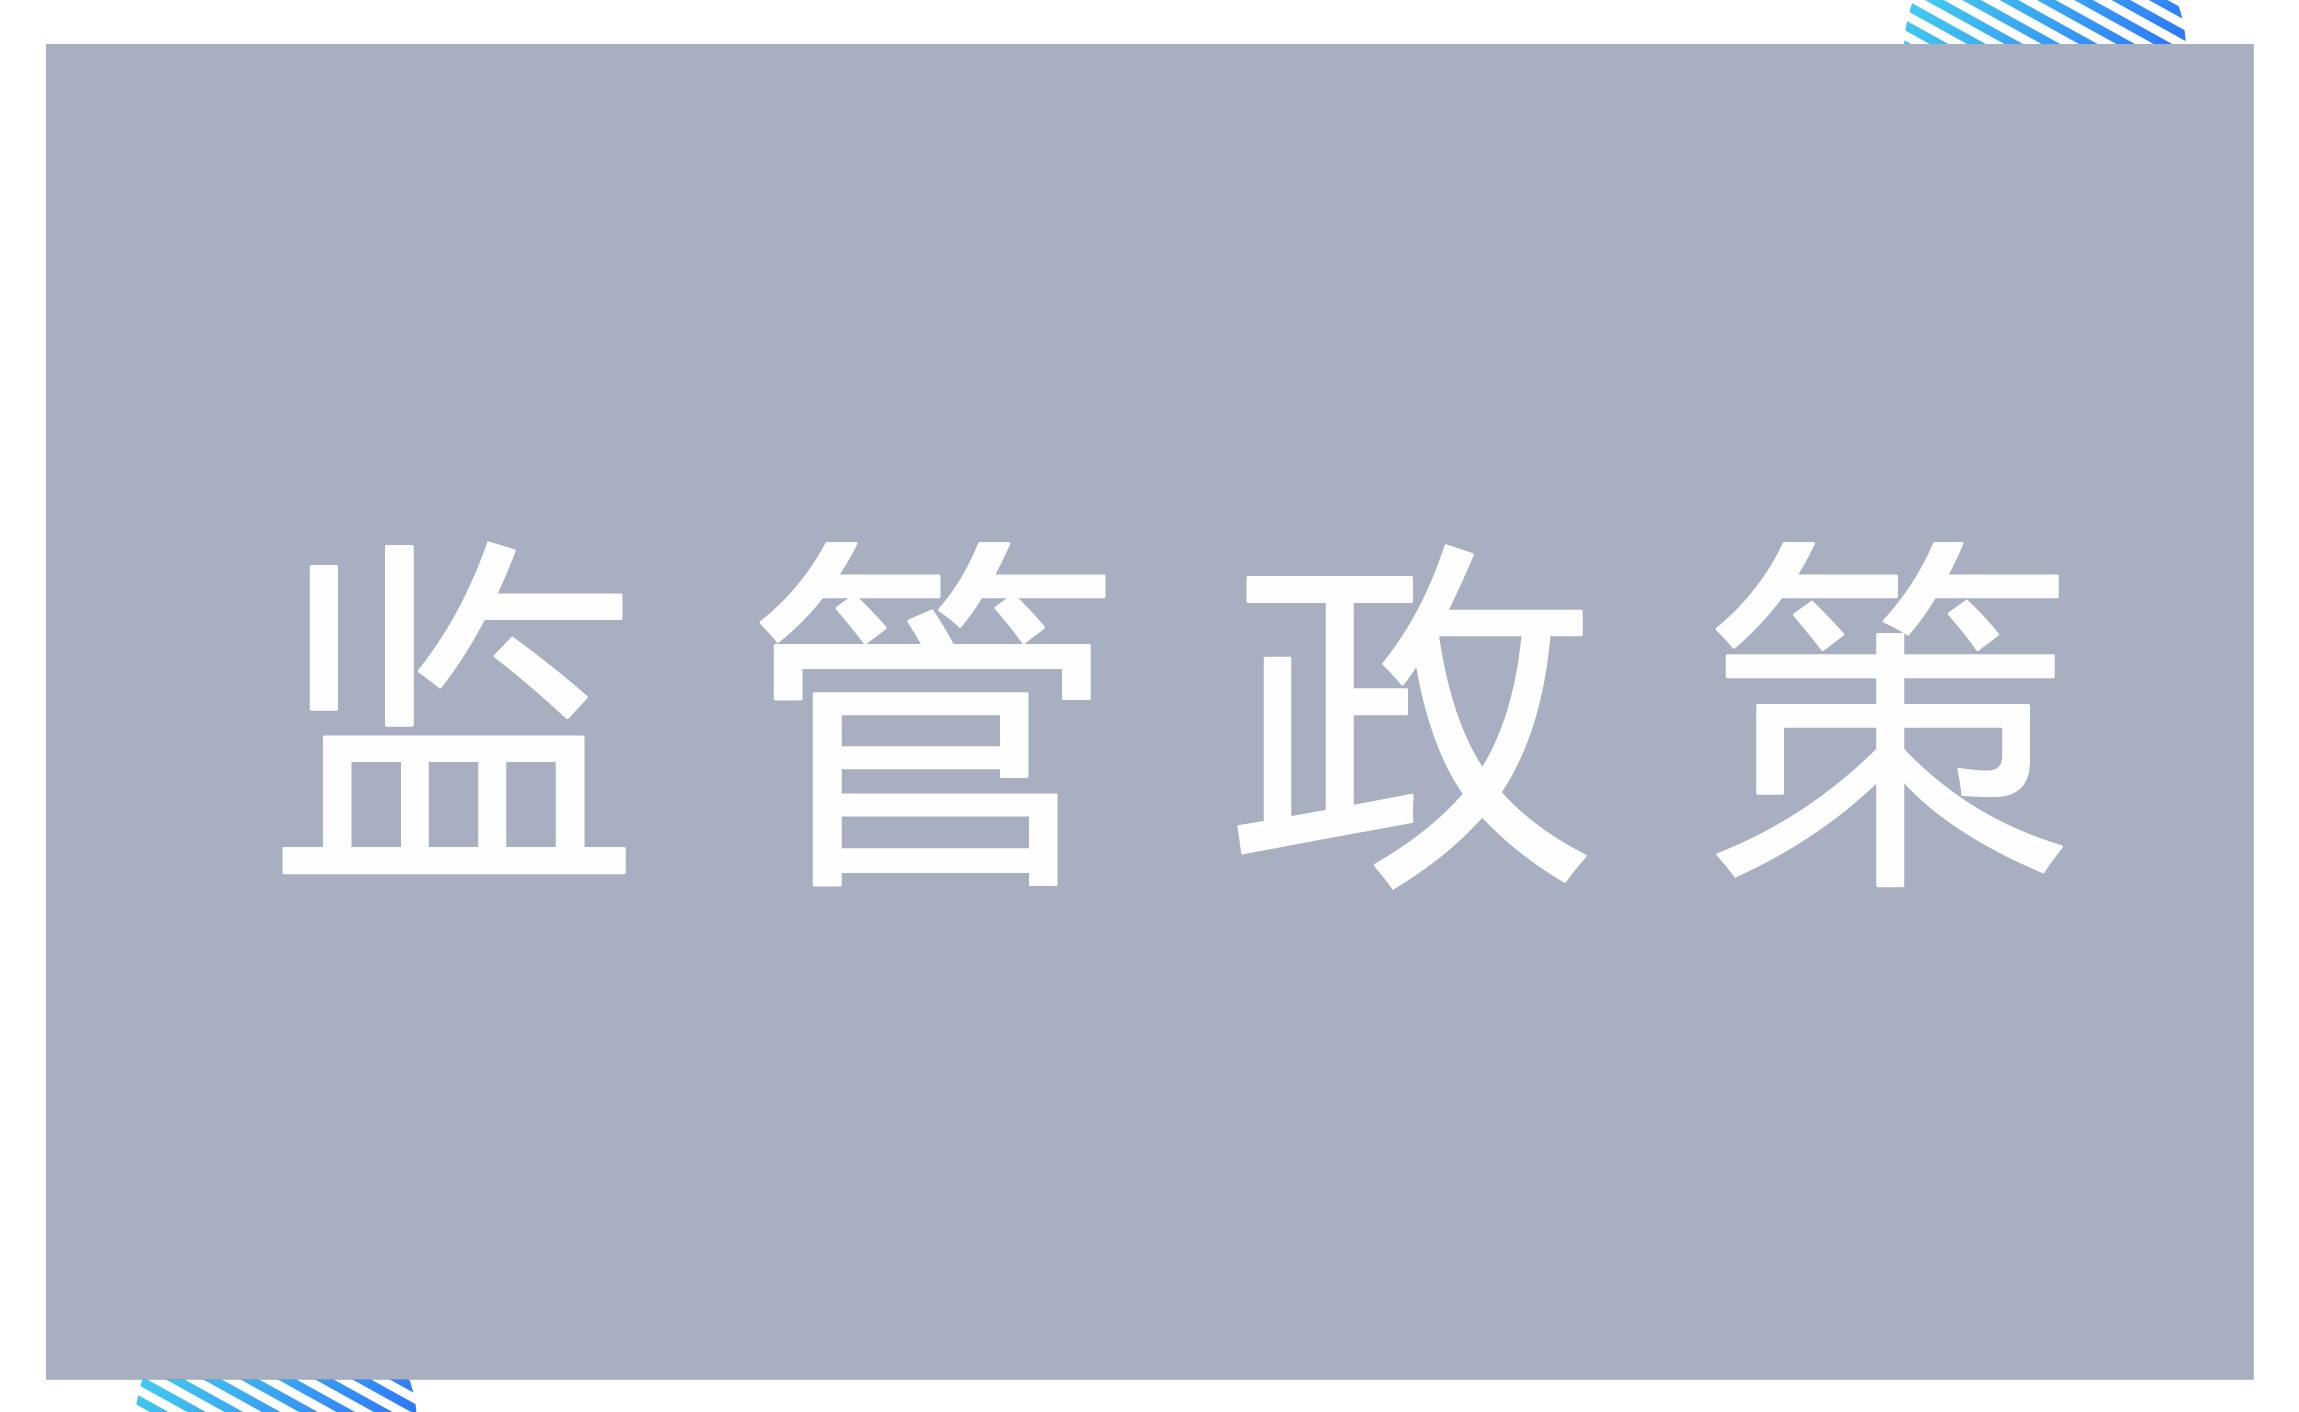 上海票交所供应链金融平台接入规则